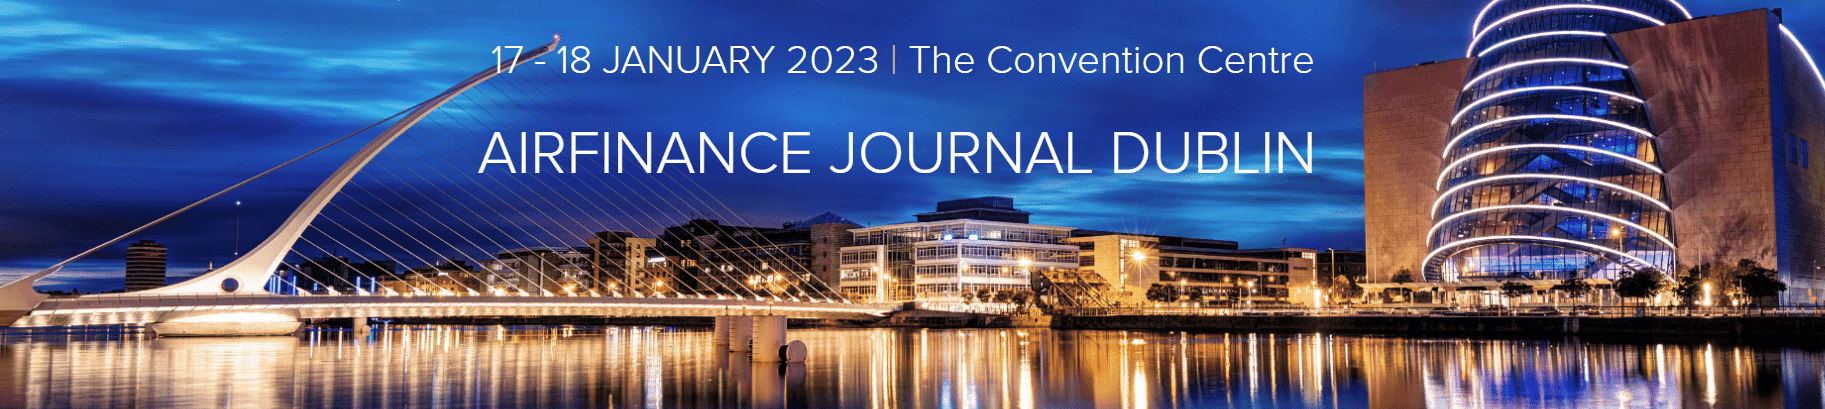 Airfinance Journal Dublin "Refresh" for January 2023